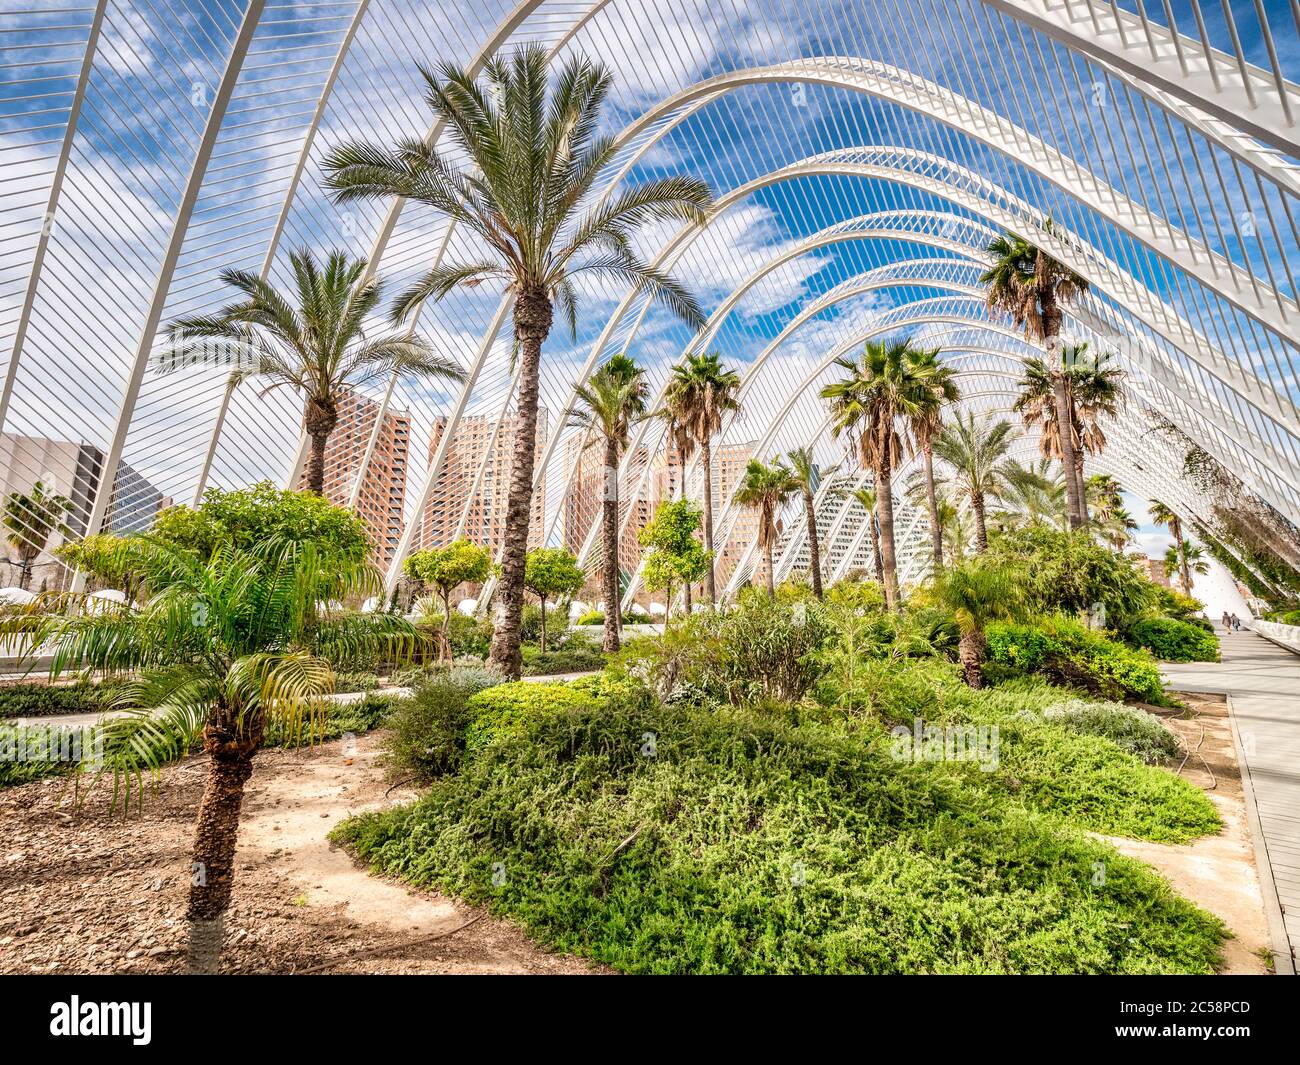 3 marzo 2020: Valencia, Spagna - l'Umbracle, un giardino di sculture e passeggiata che formano un ingresso alla Città delle Arti e delle Scienze di Valencia. Foto Stock